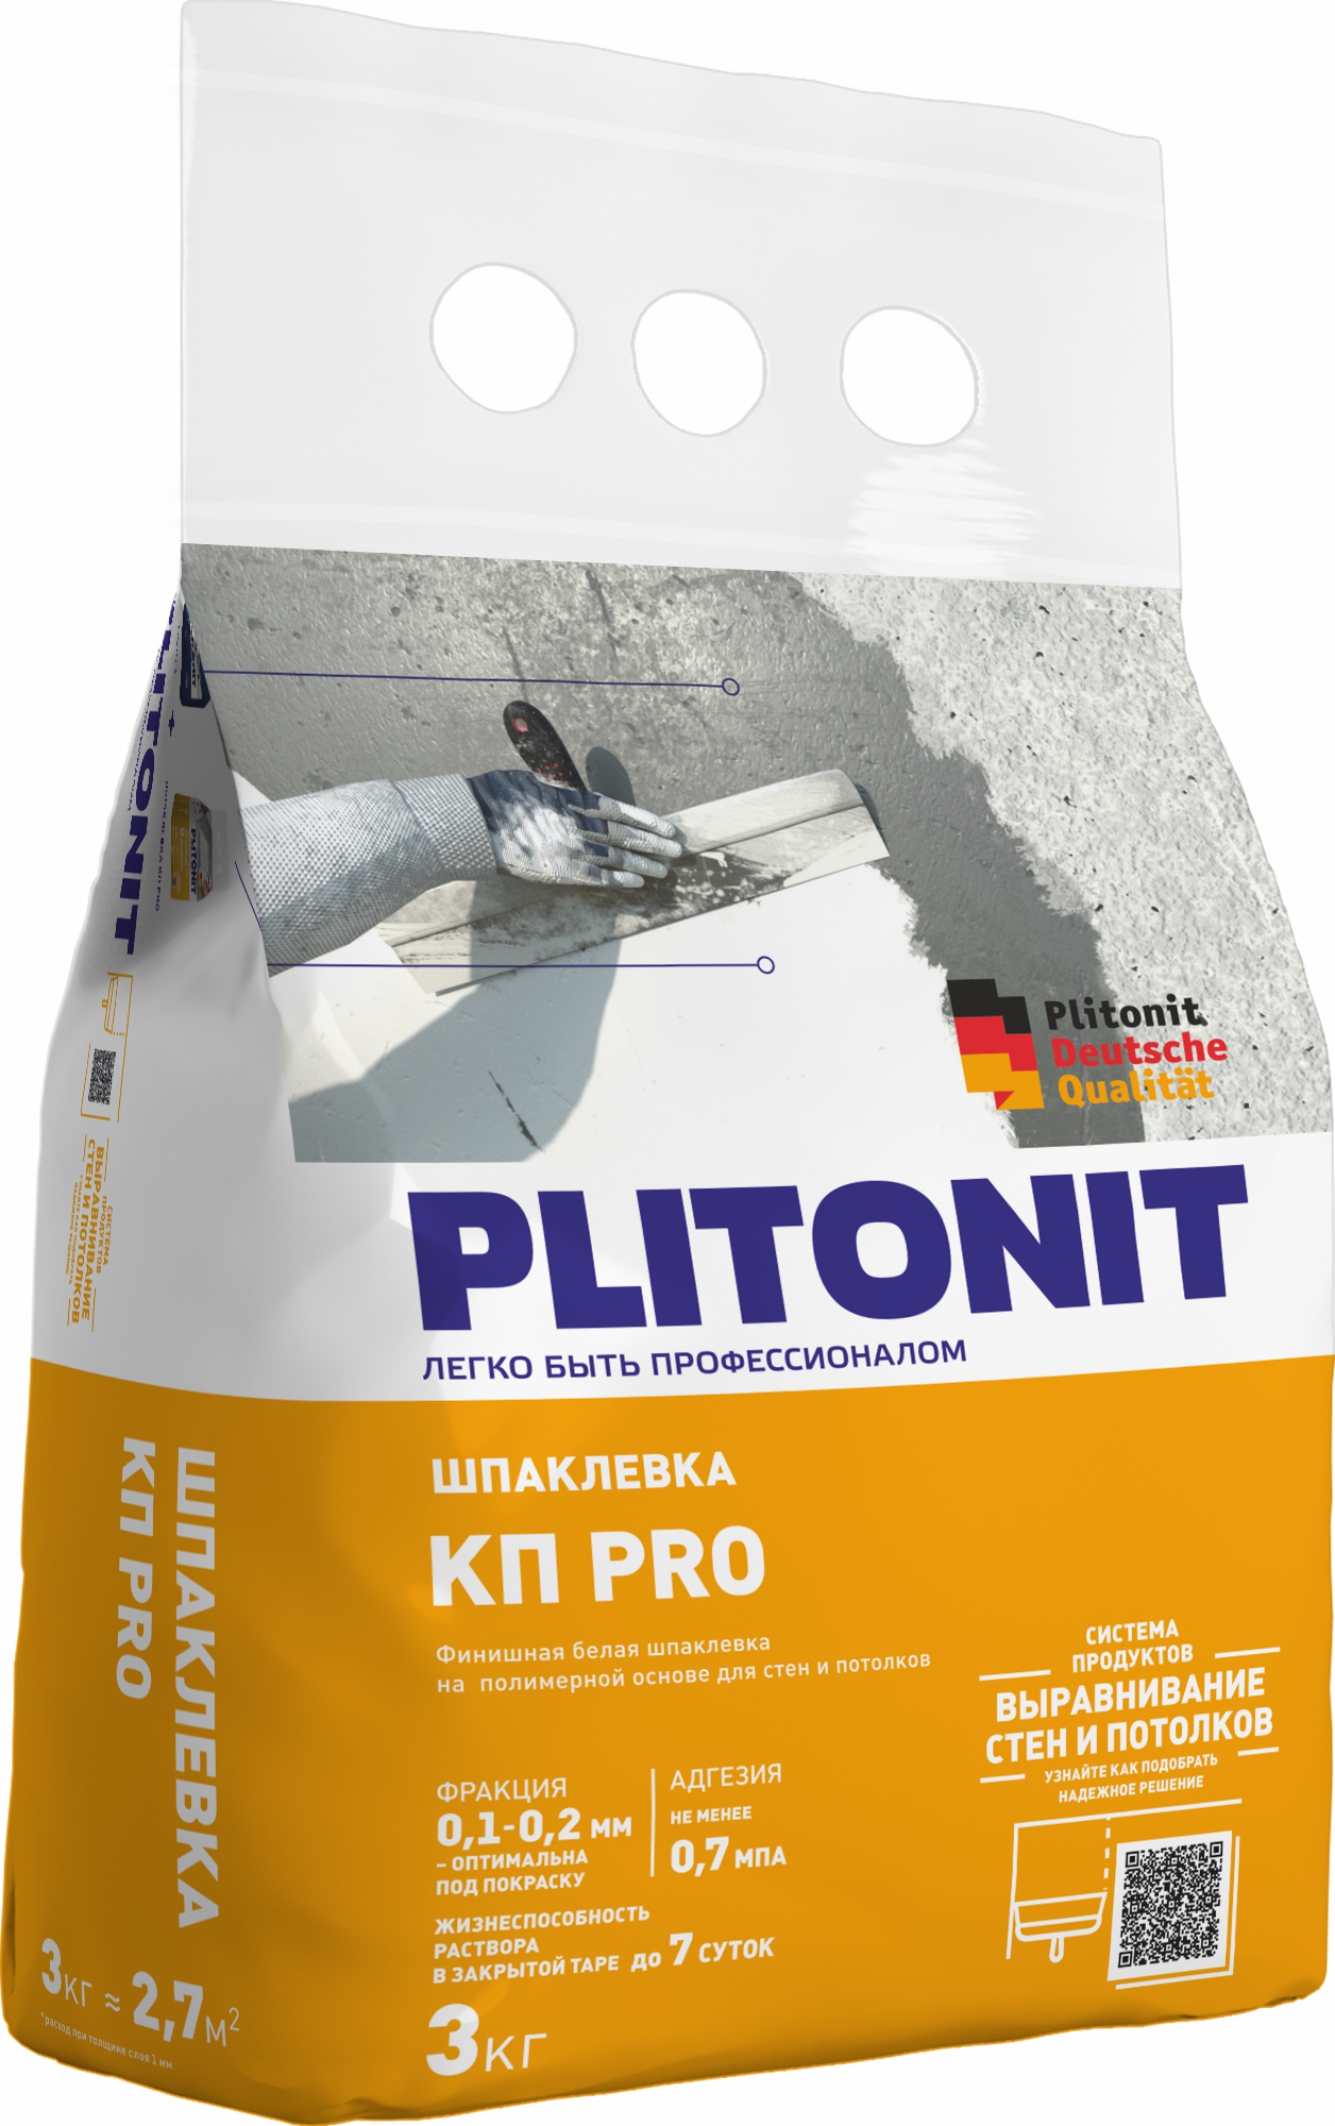 PLITONIT КПpro - 3 финишная шпаклевка на полимерной основе для стен и потолков , PLITONIT КПpro - 3 финишная шпаклевка на полимерной основе для стен и потолков 